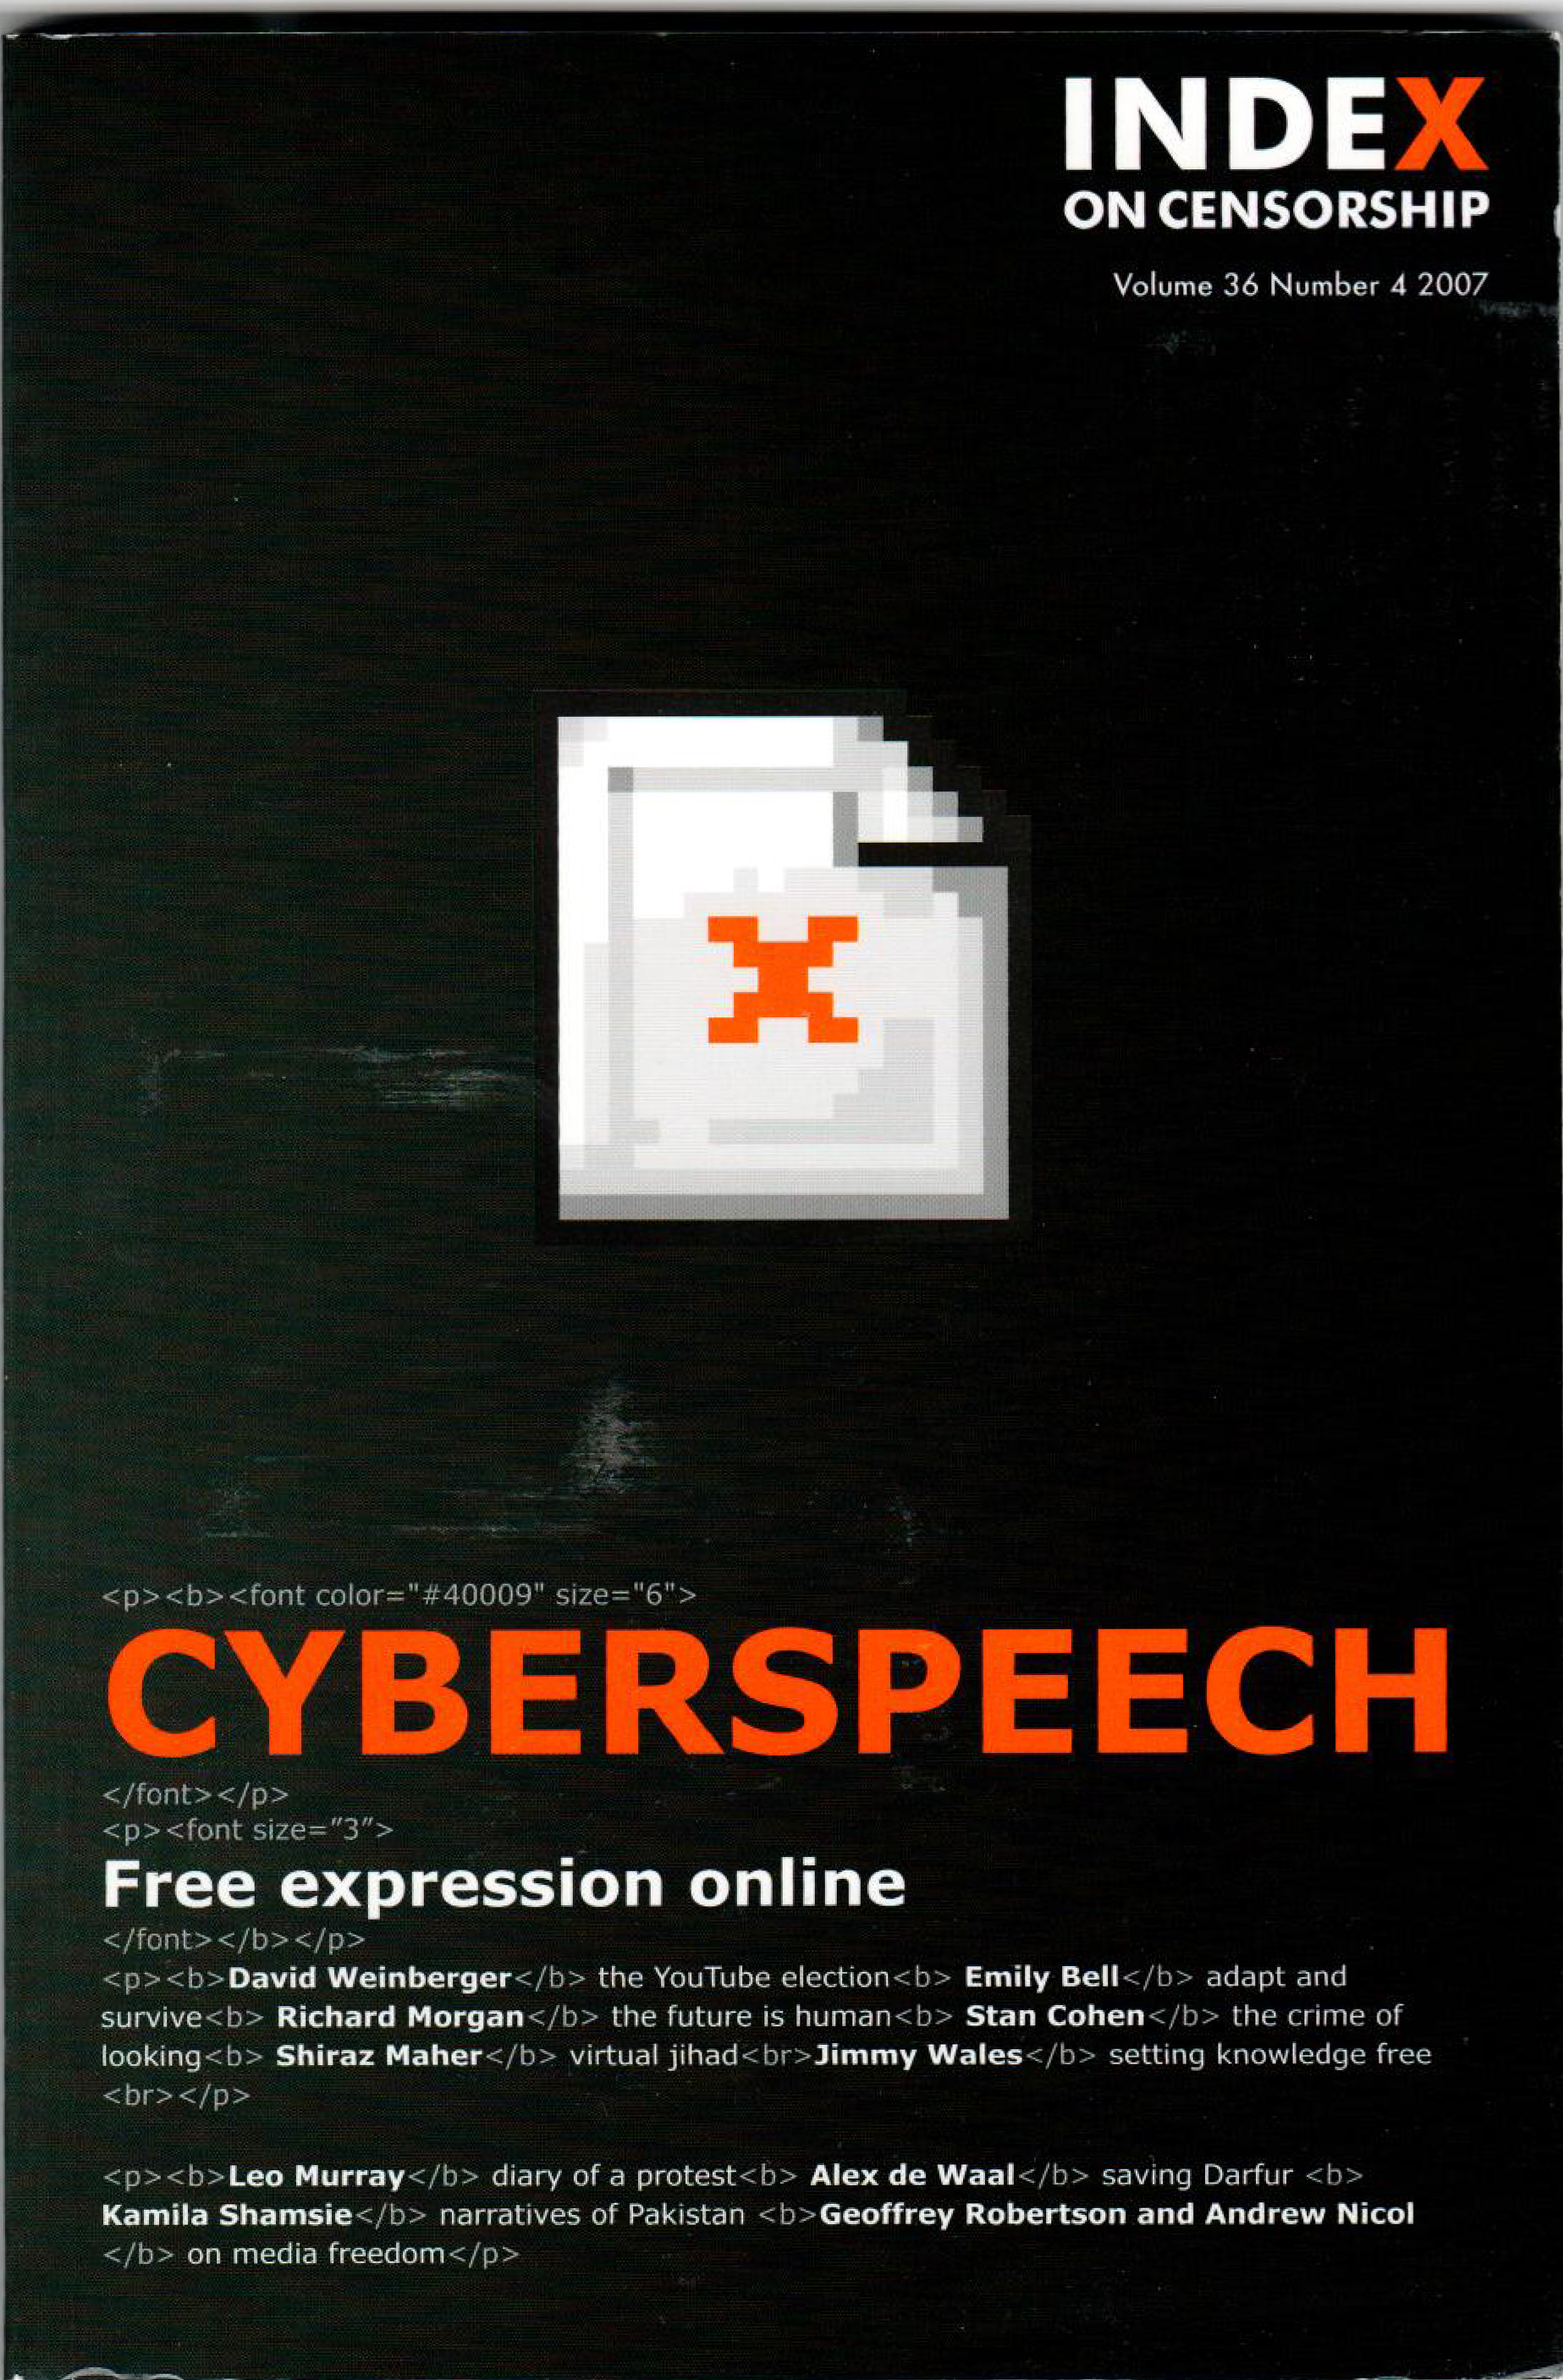 Cyberspeech